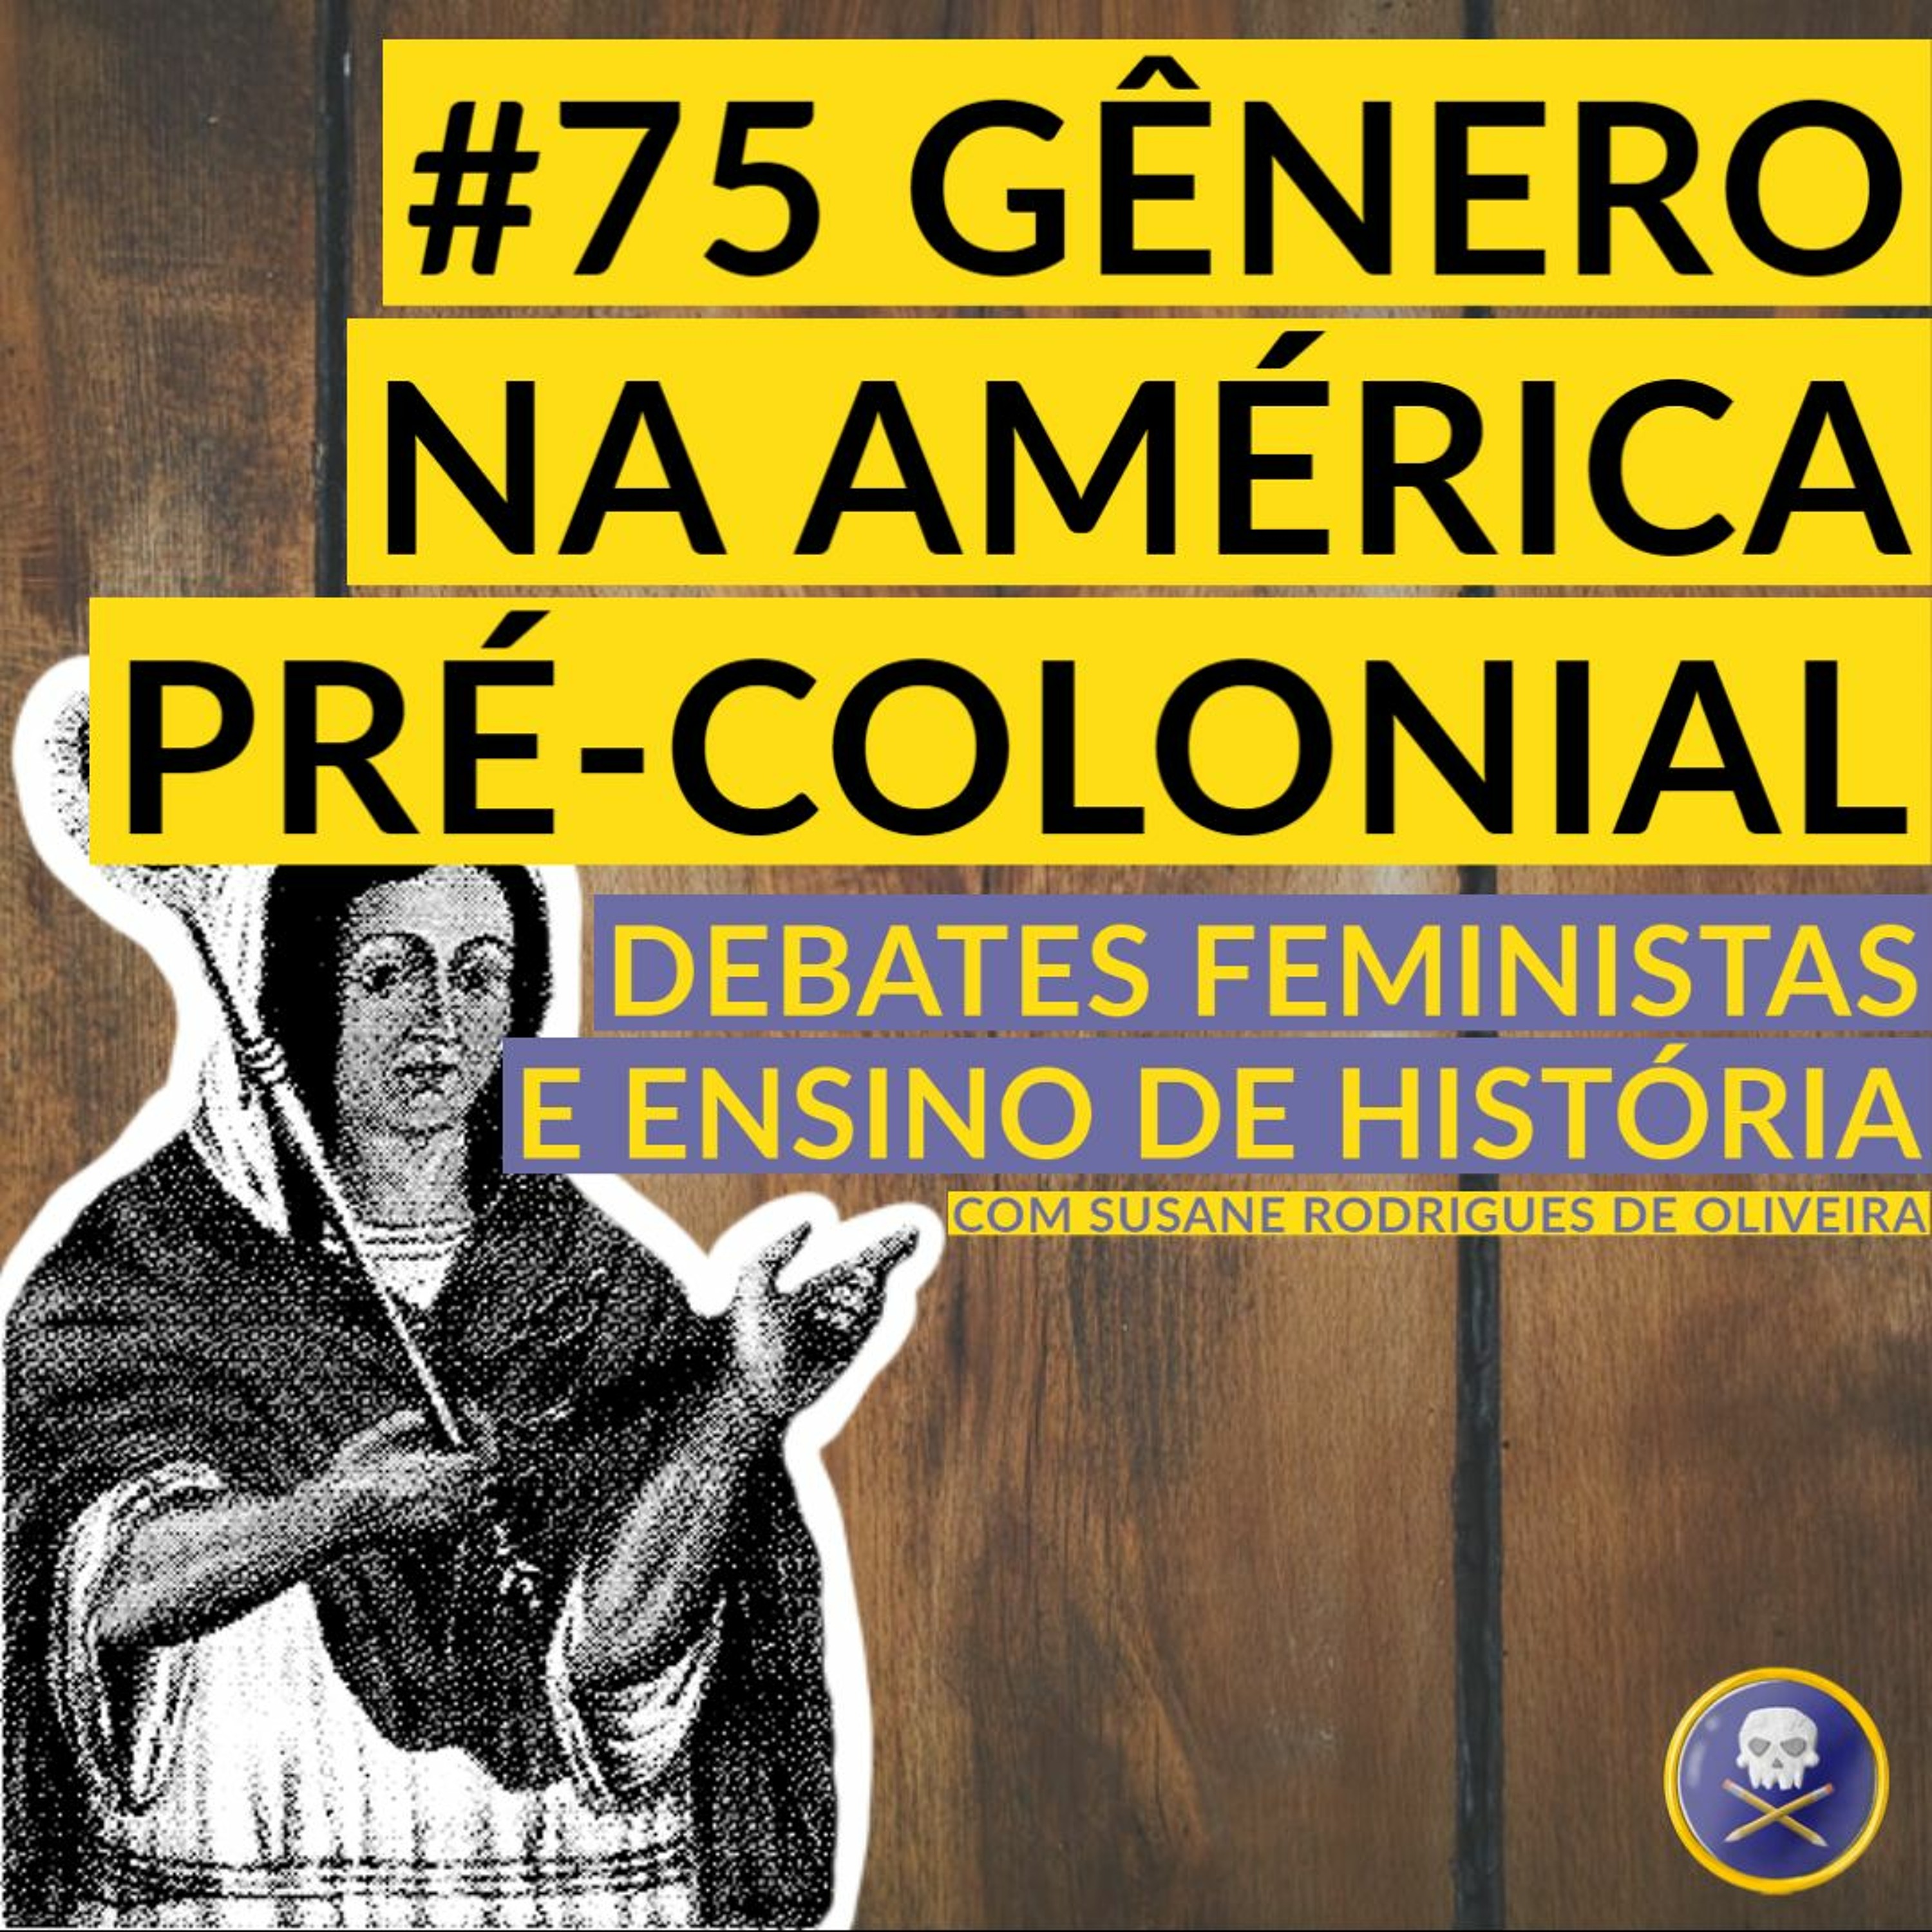 História Pirata #75 - Gênero na América pré-colonial com Susane Rodrigues de Oliveira